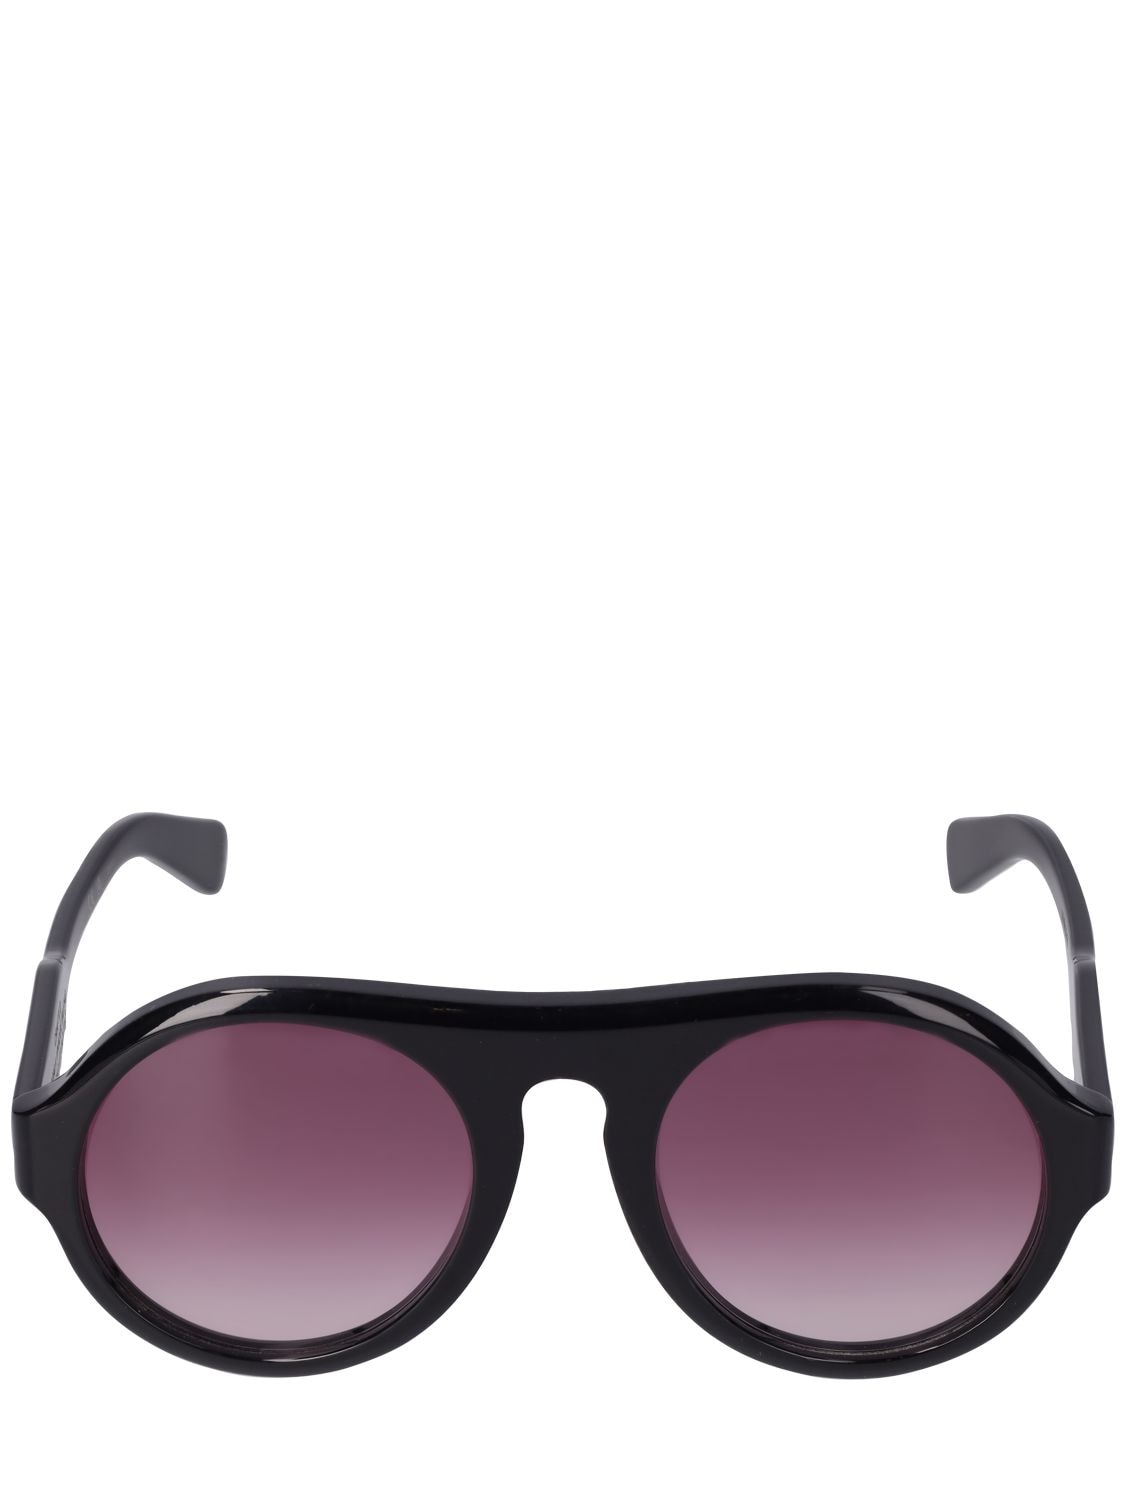 Image of Reace Pilot Bio-acetate Sunglasses